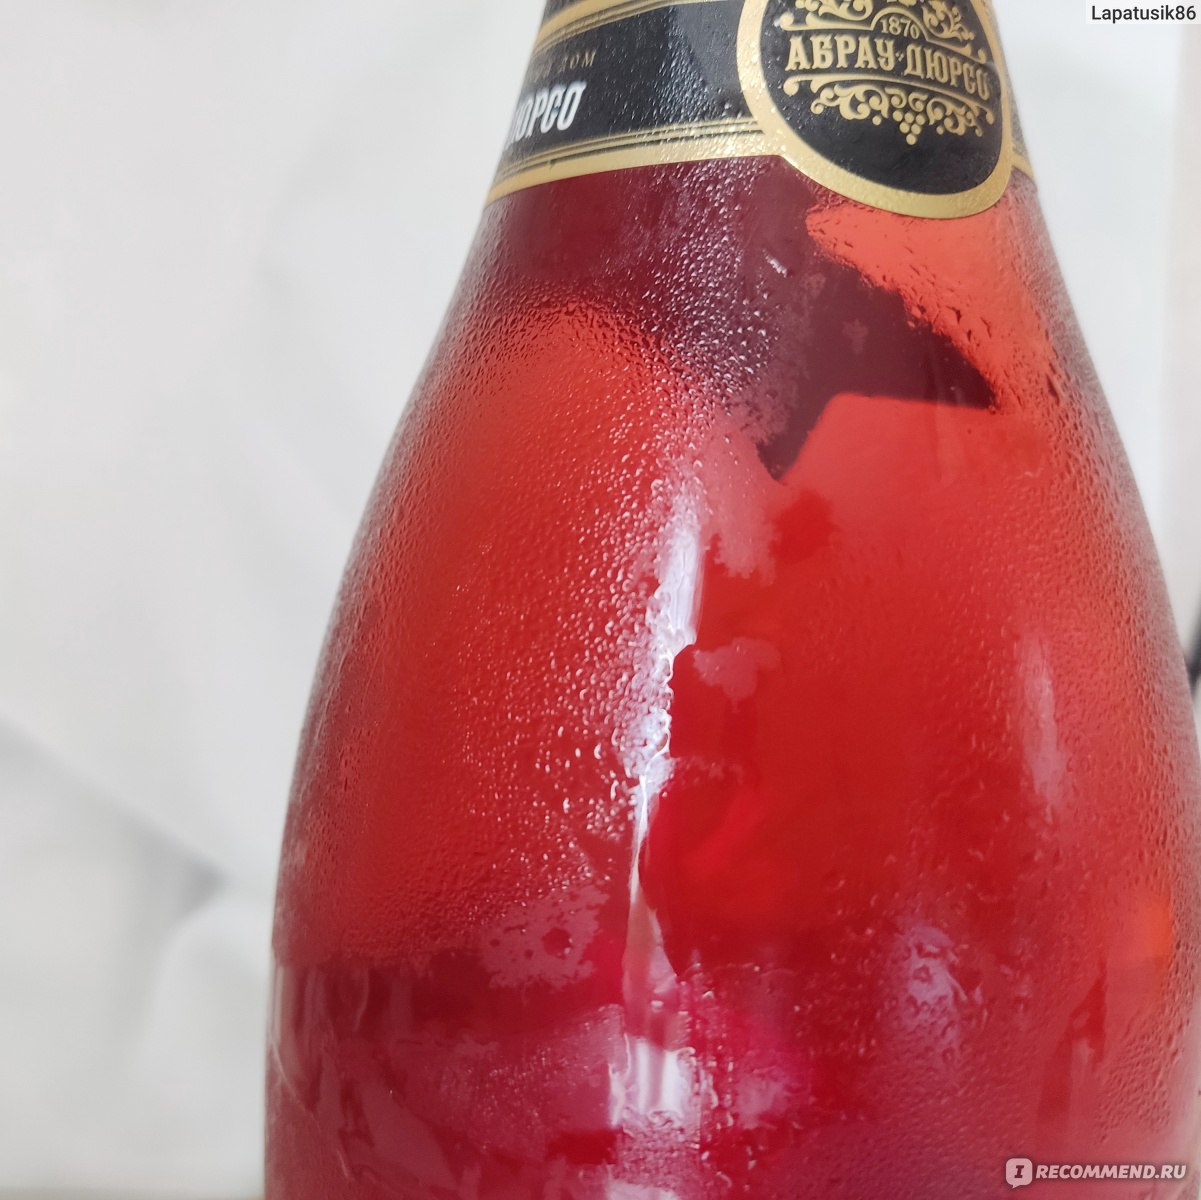 Шампанское Абрау-Дюрсо Полусухое розовое фото